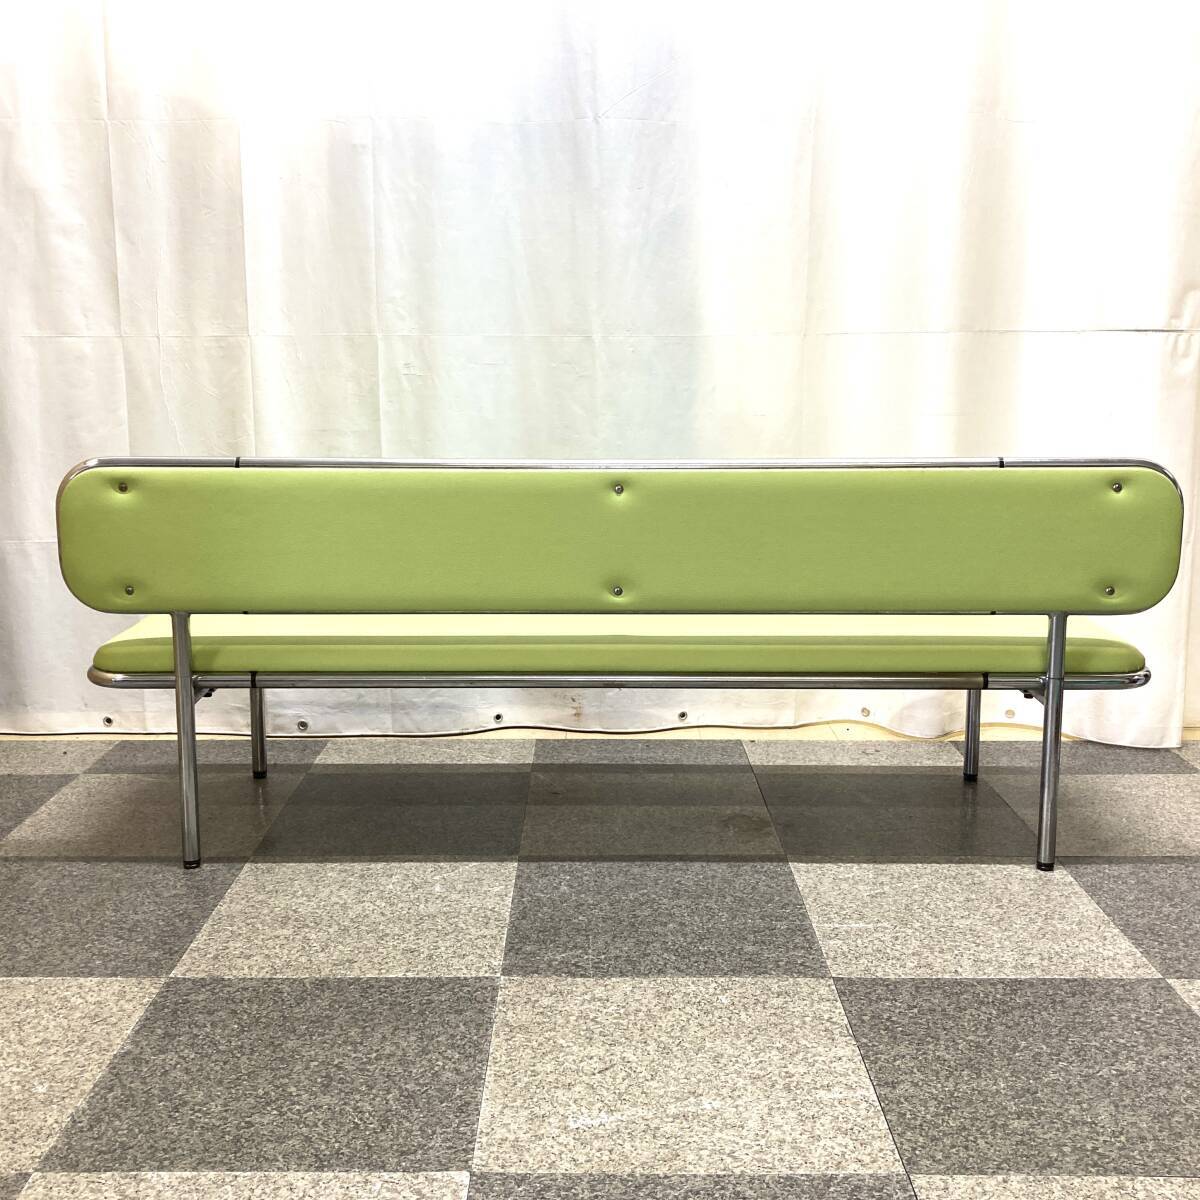 *PLUS? стул для лобби . есть ширина примерно 180cm зеленый зеленый цвет длина стул ... больница маленький ..... объект вход многоцелевой Space pop bench 